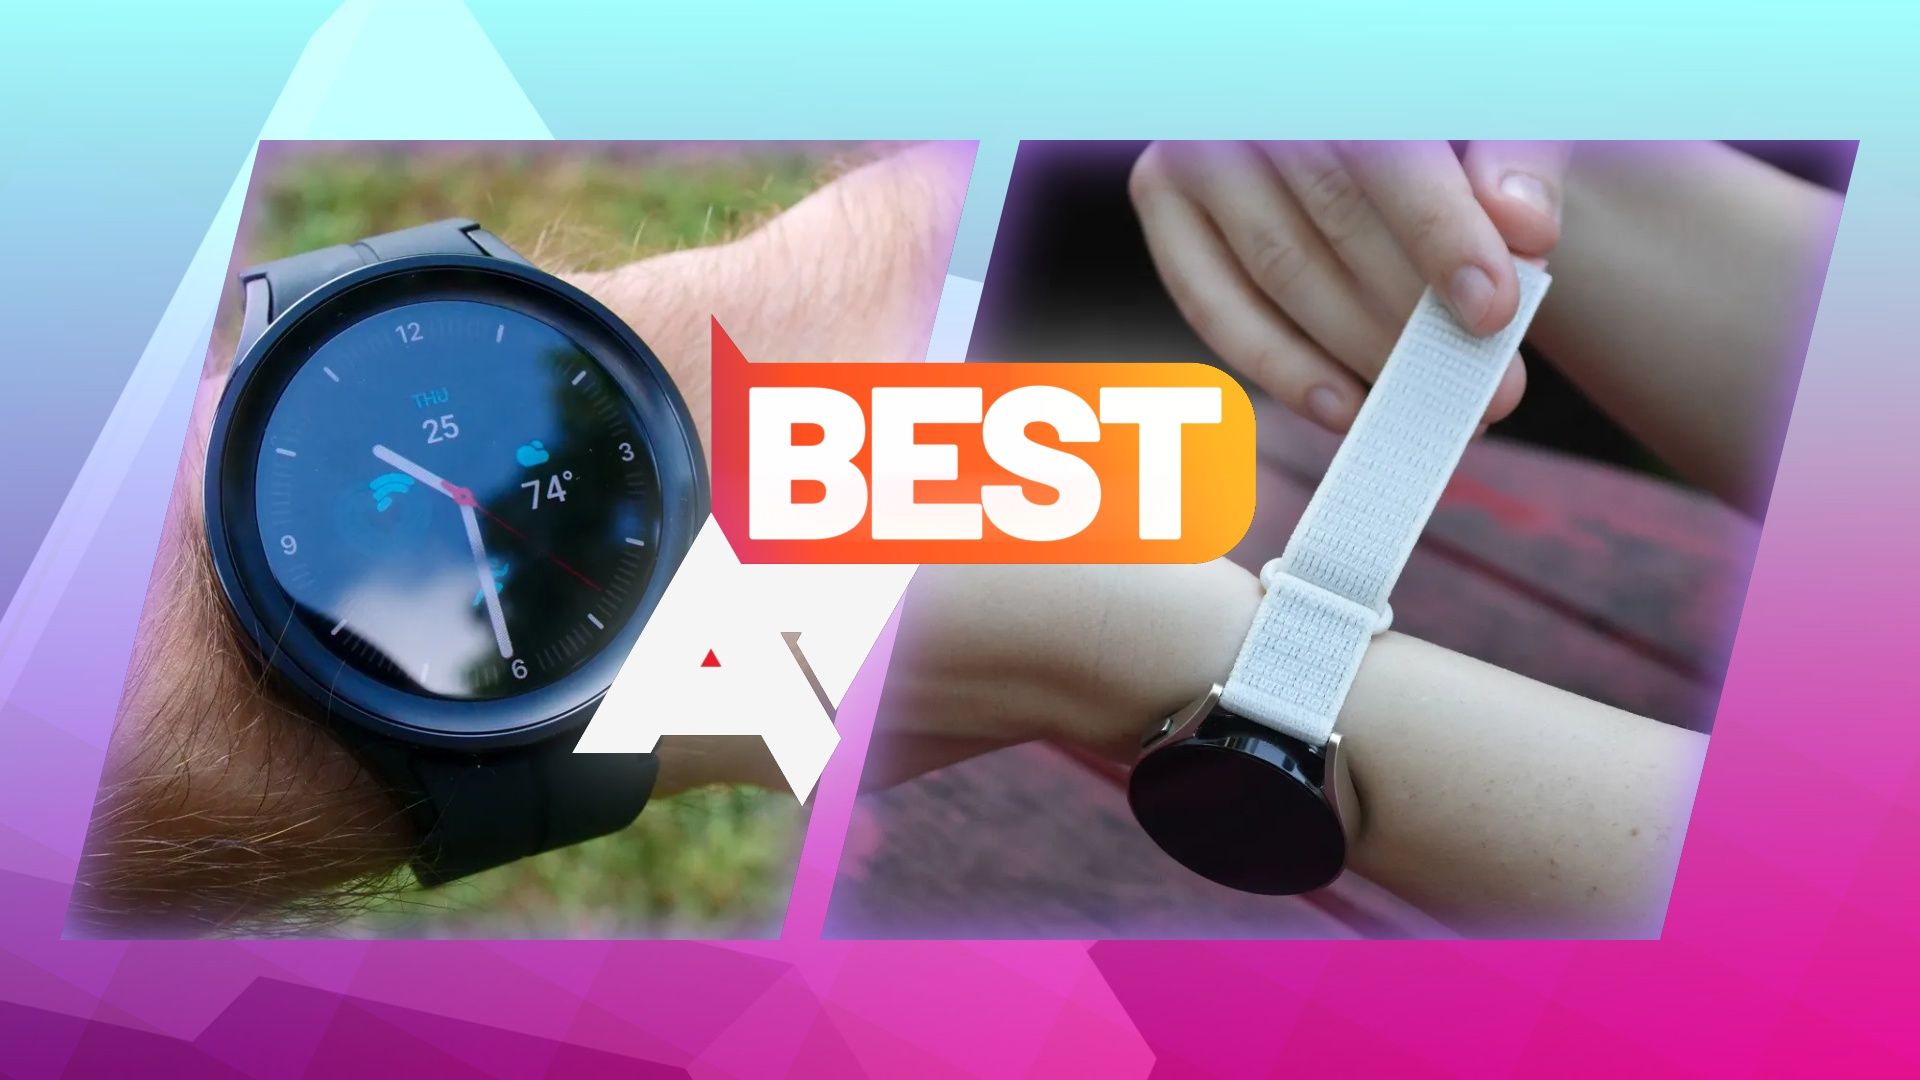 Best Samsung Watches